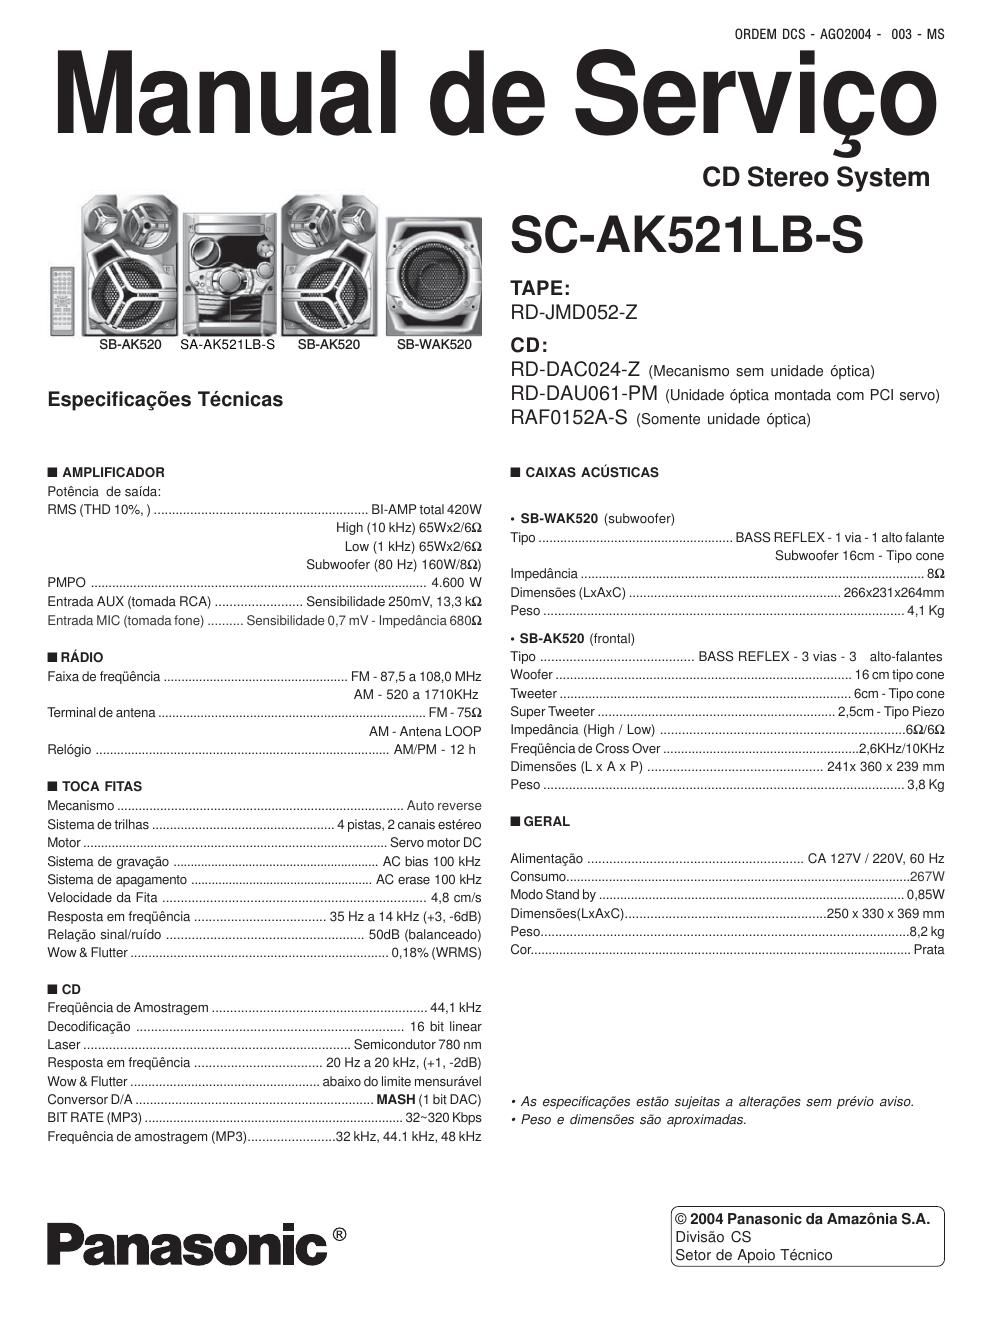 panasonic sc ak 521 lbs service manual